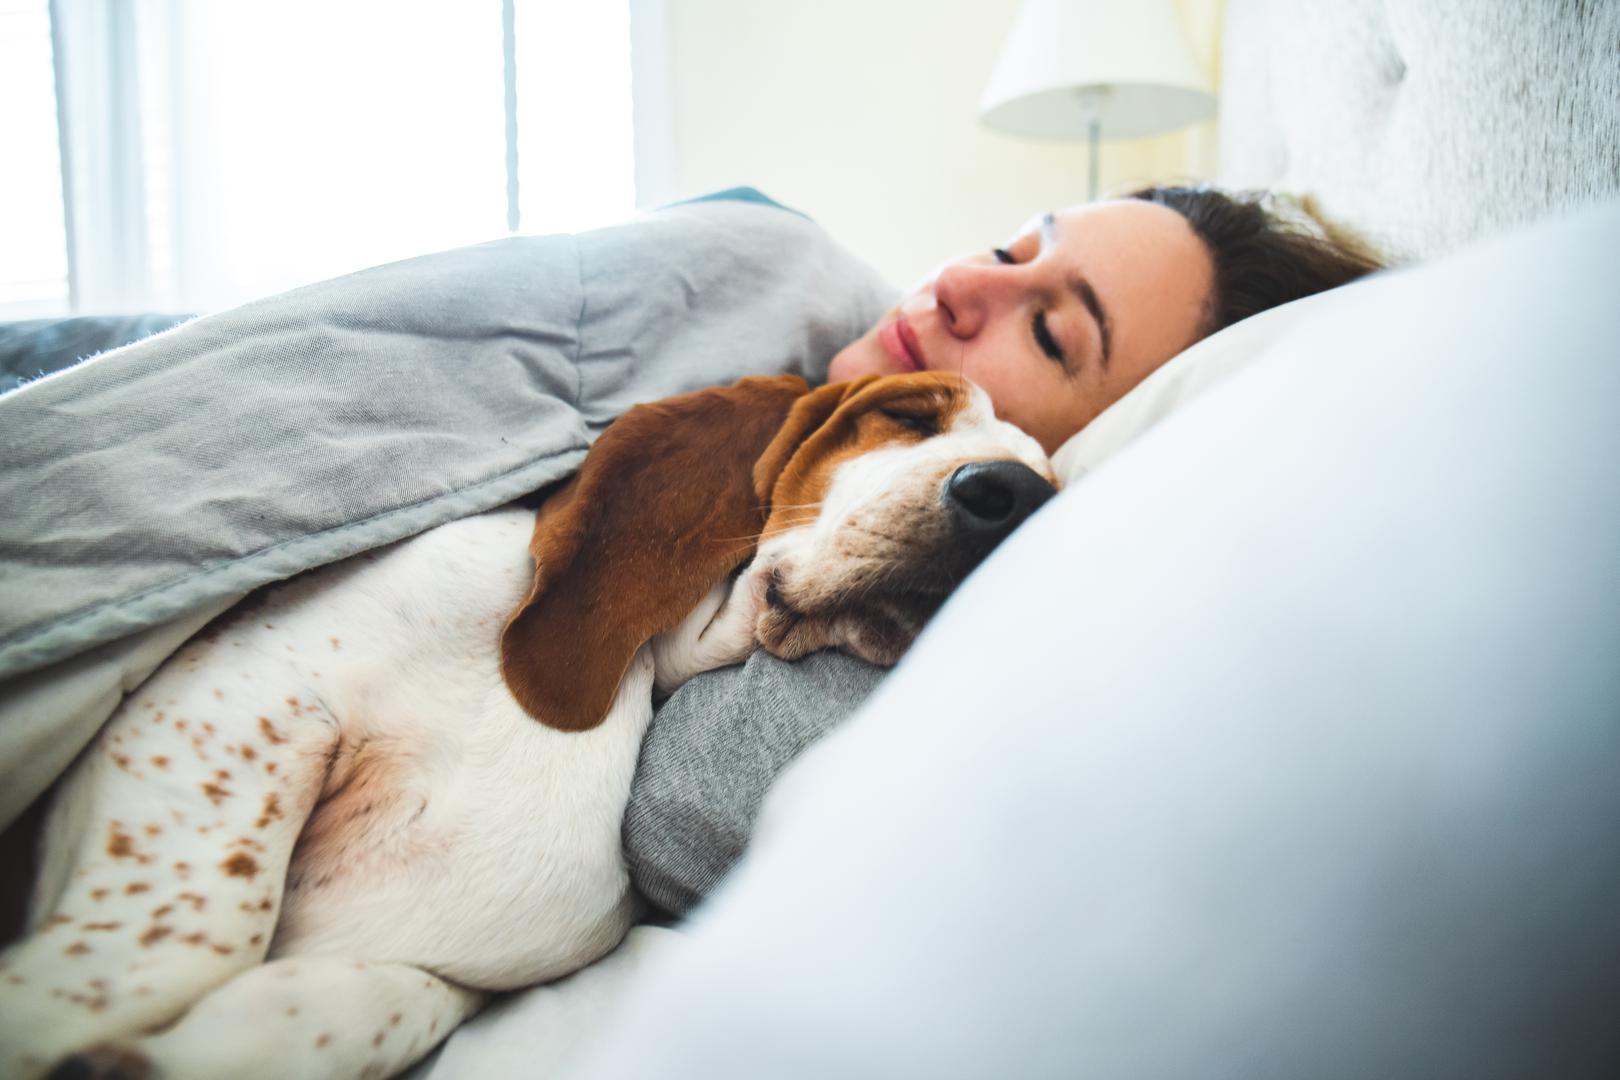 8. Promjena navika spavanja: ‘Psi mogu izgledati umornije i potištenije kada su usamljeni’, otkriva Golya. Zbog toga, ako shvatite da vaš ljubimac spava više nego inače, to bi mogao biti znak da se ne osjeća najbolje.